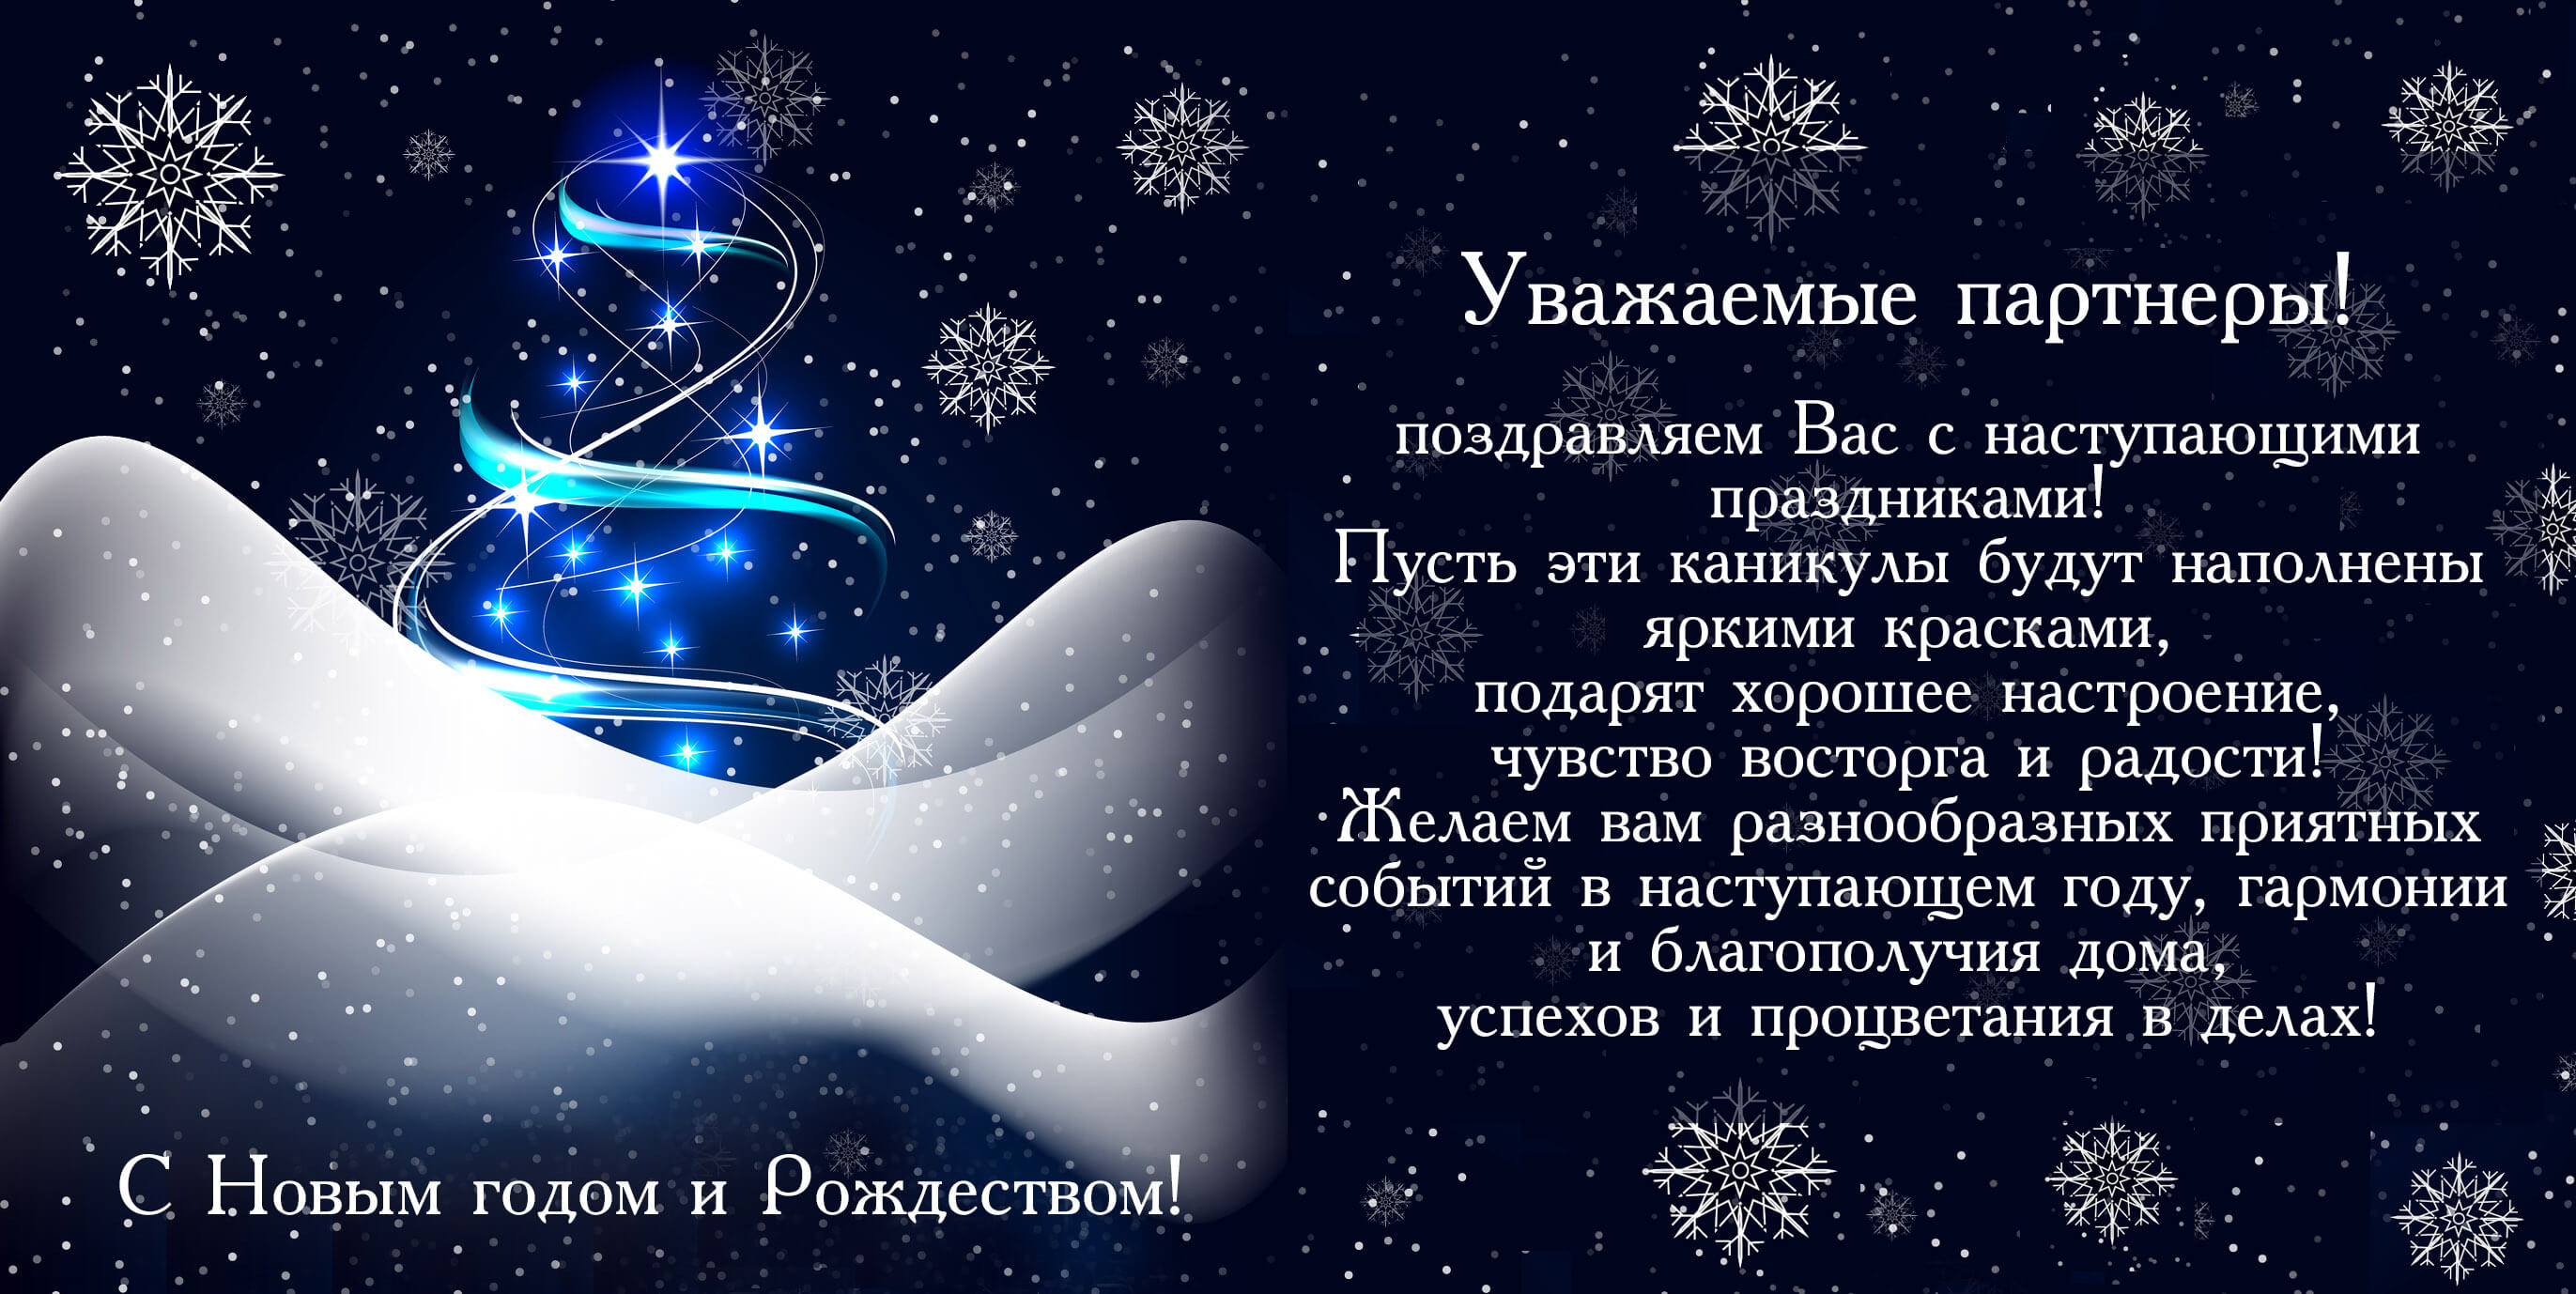 ГК «БайкалПрофКомплект» поздравляет Вас с наступающим Новым годом!